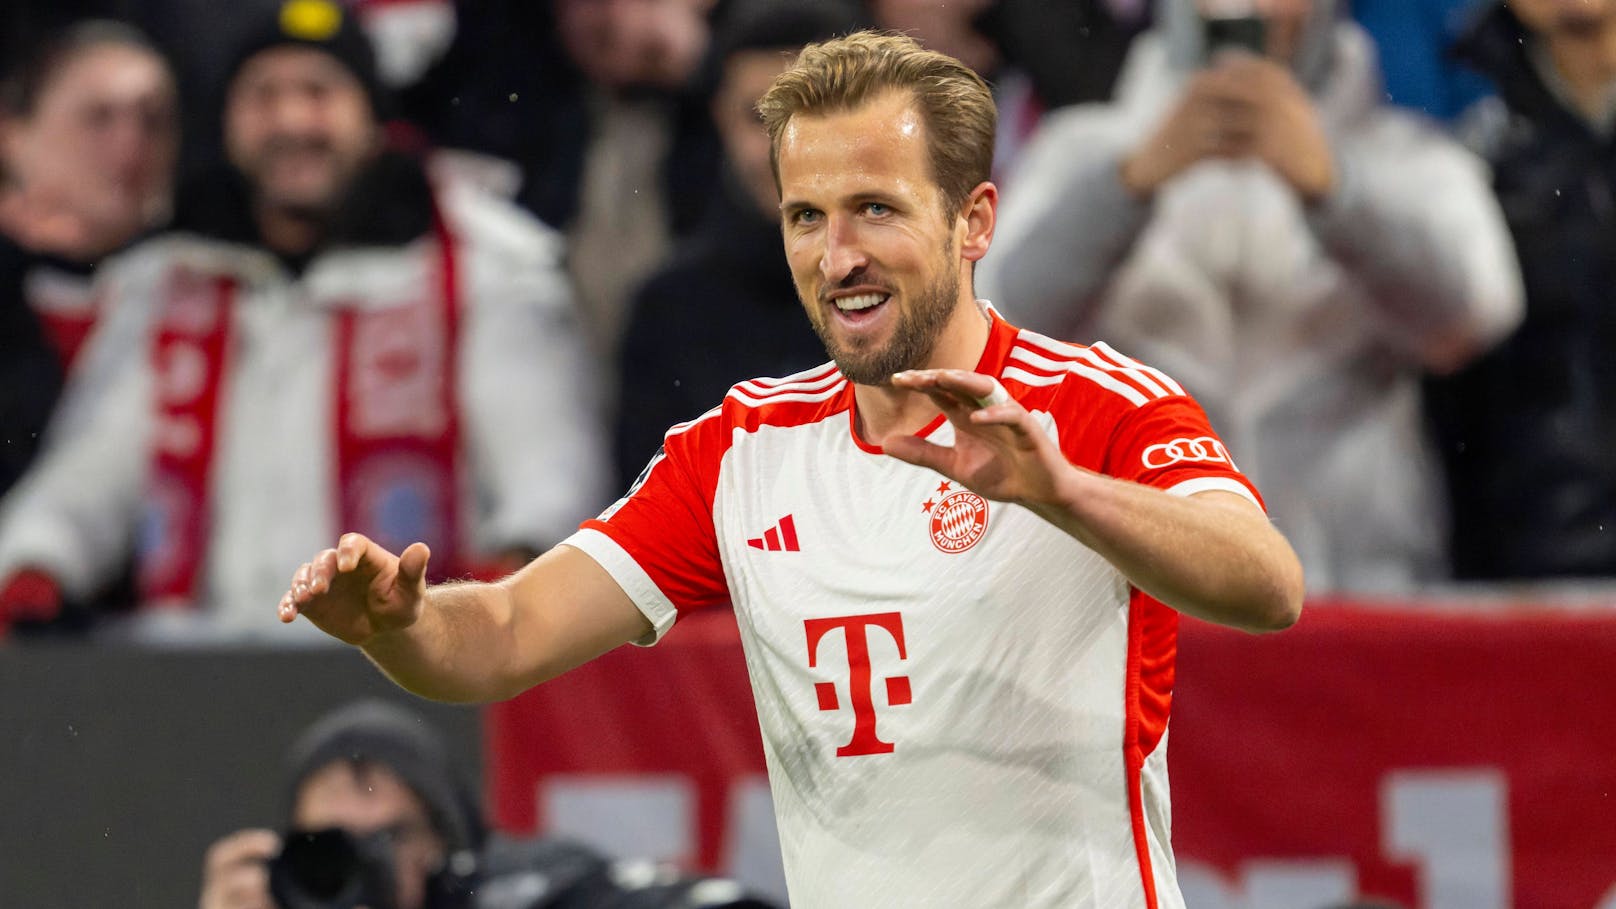 Eiskalt! Bayern-Star Kane lässt TV-Experten auflaufen